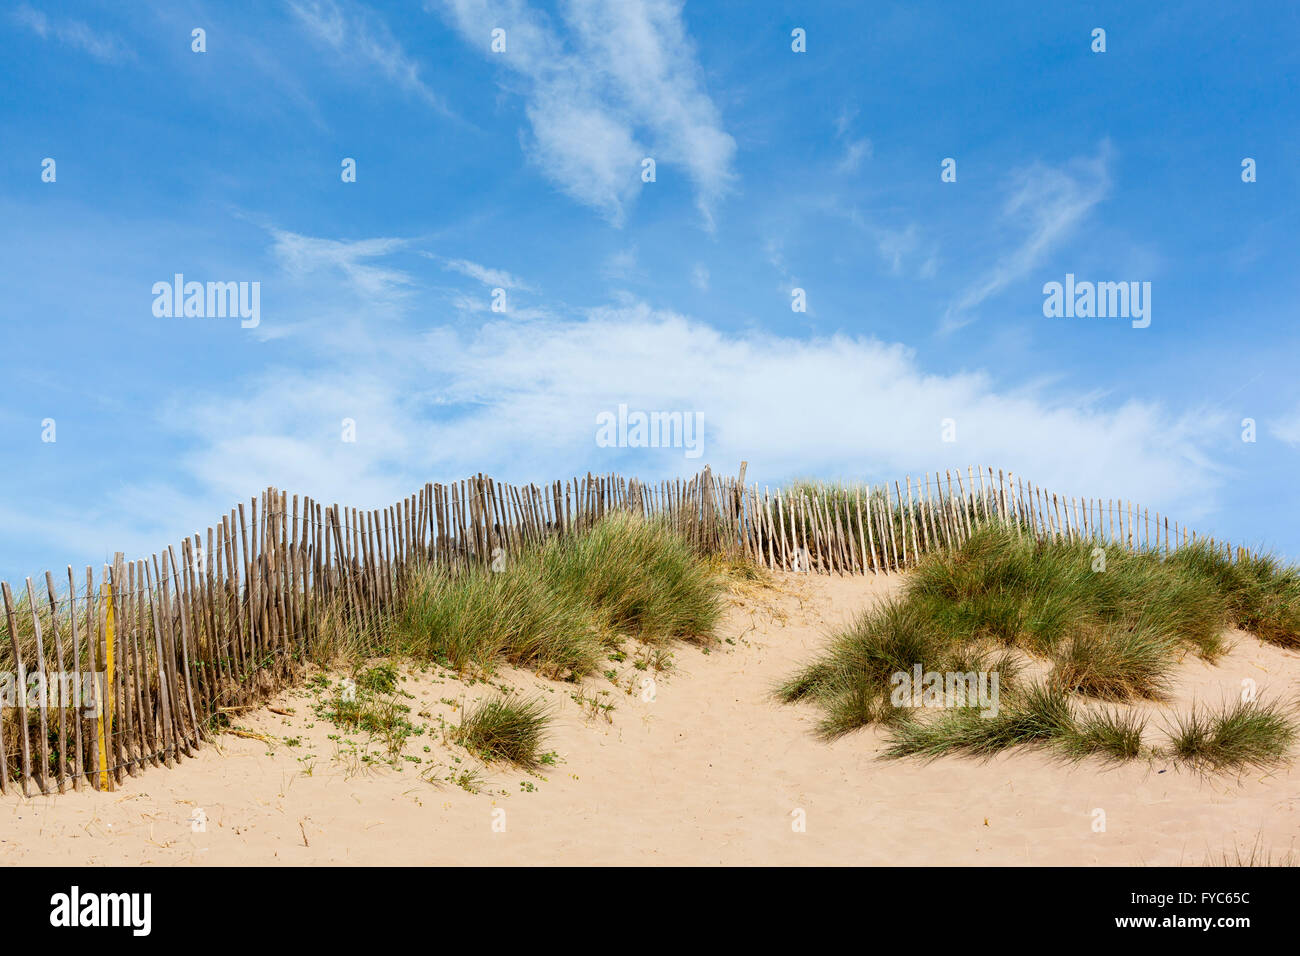 Dunes de sable avec de l'herbe, clôture en bois et un ciel d'été. Banque D'Images